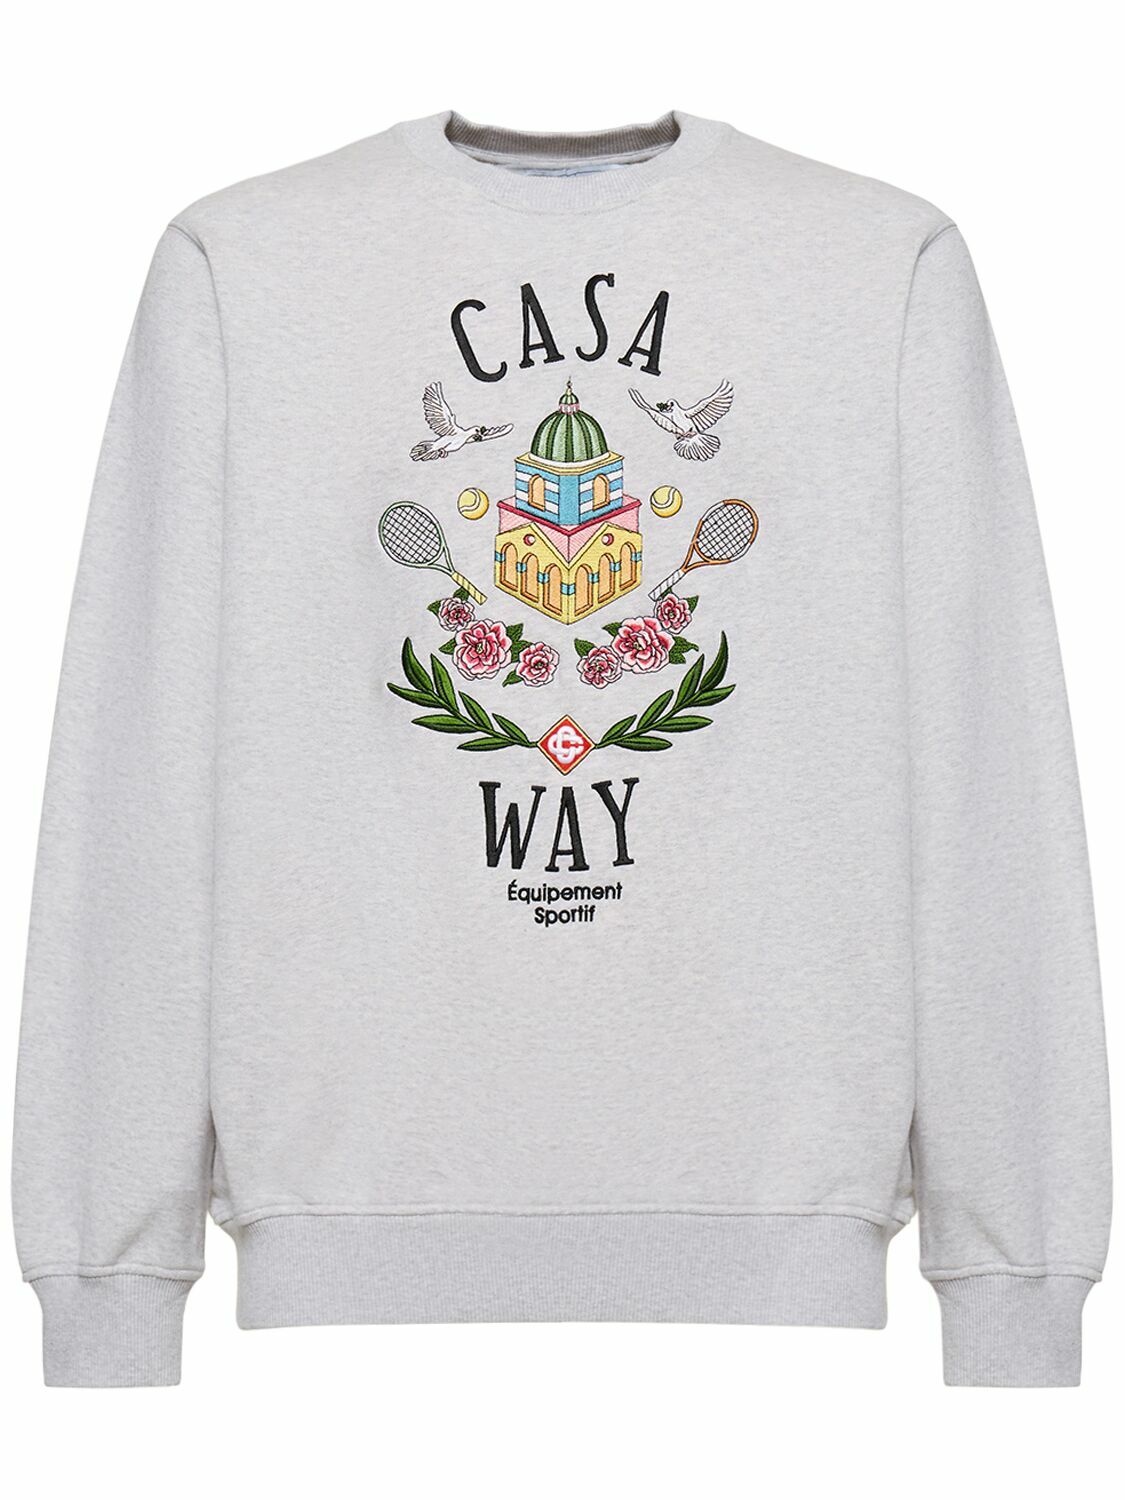 Photo: CASABLANCA - Casa Way Organic Cotton Sweatshirt